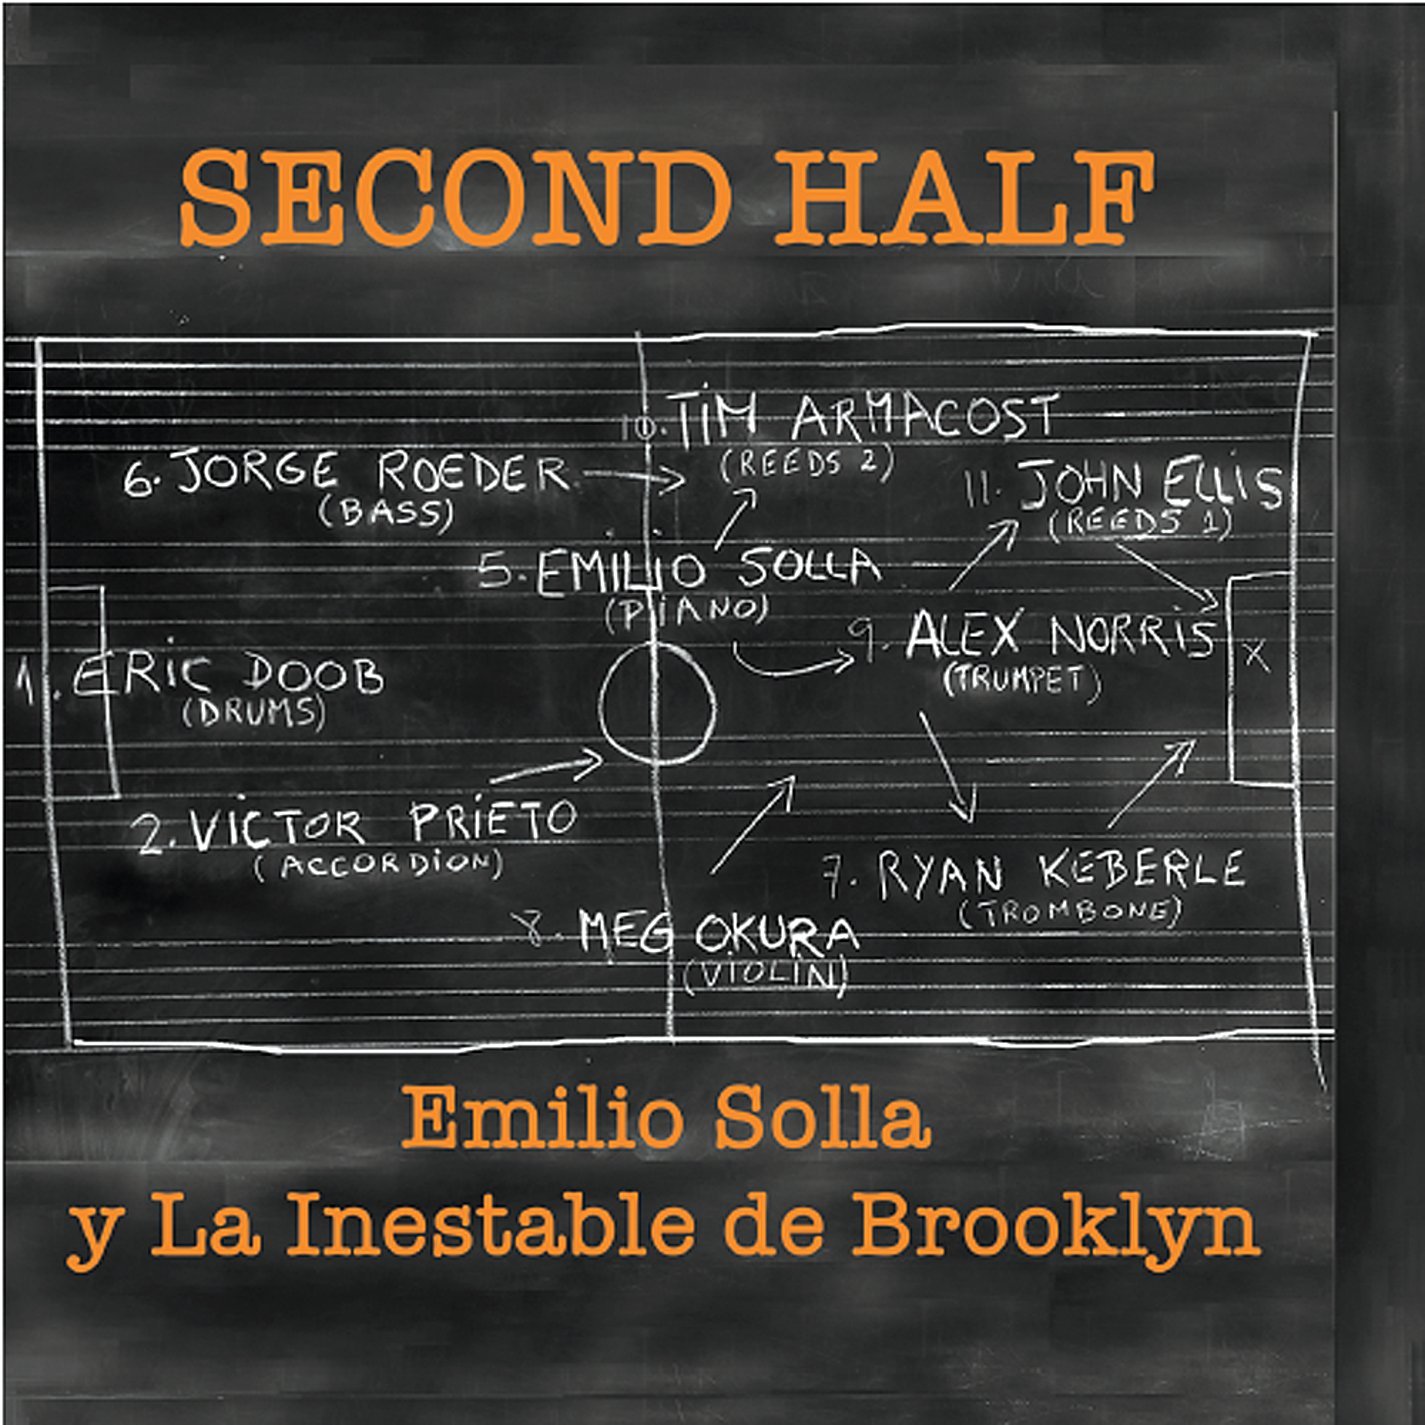 EMILIO SOLLA - Second Half cover 